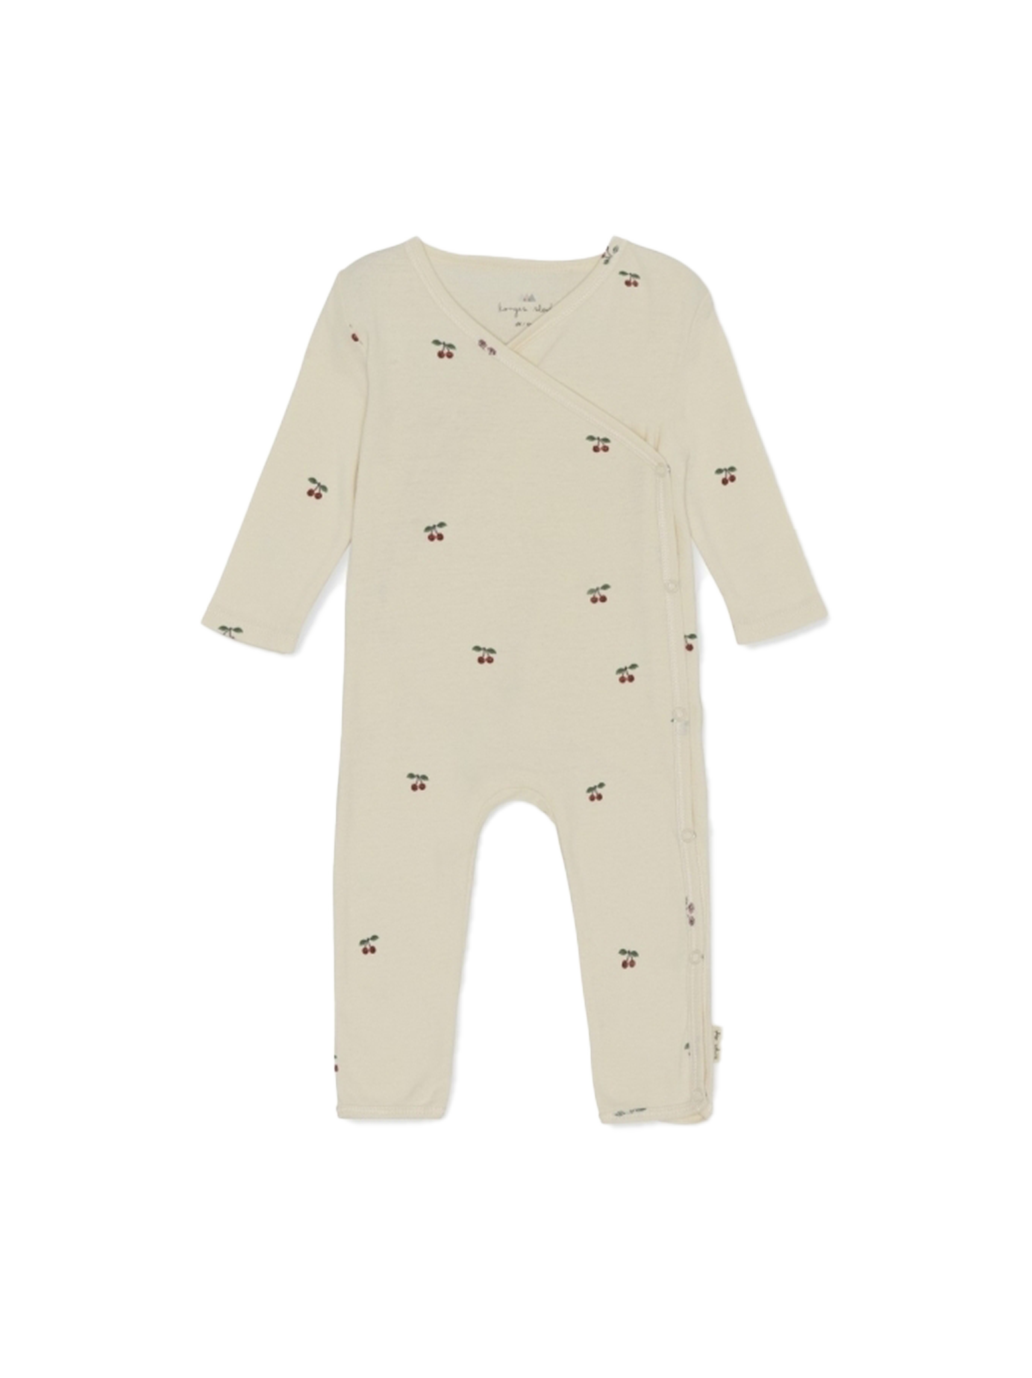 Newborn Onesie organic cotton wrap pajamas